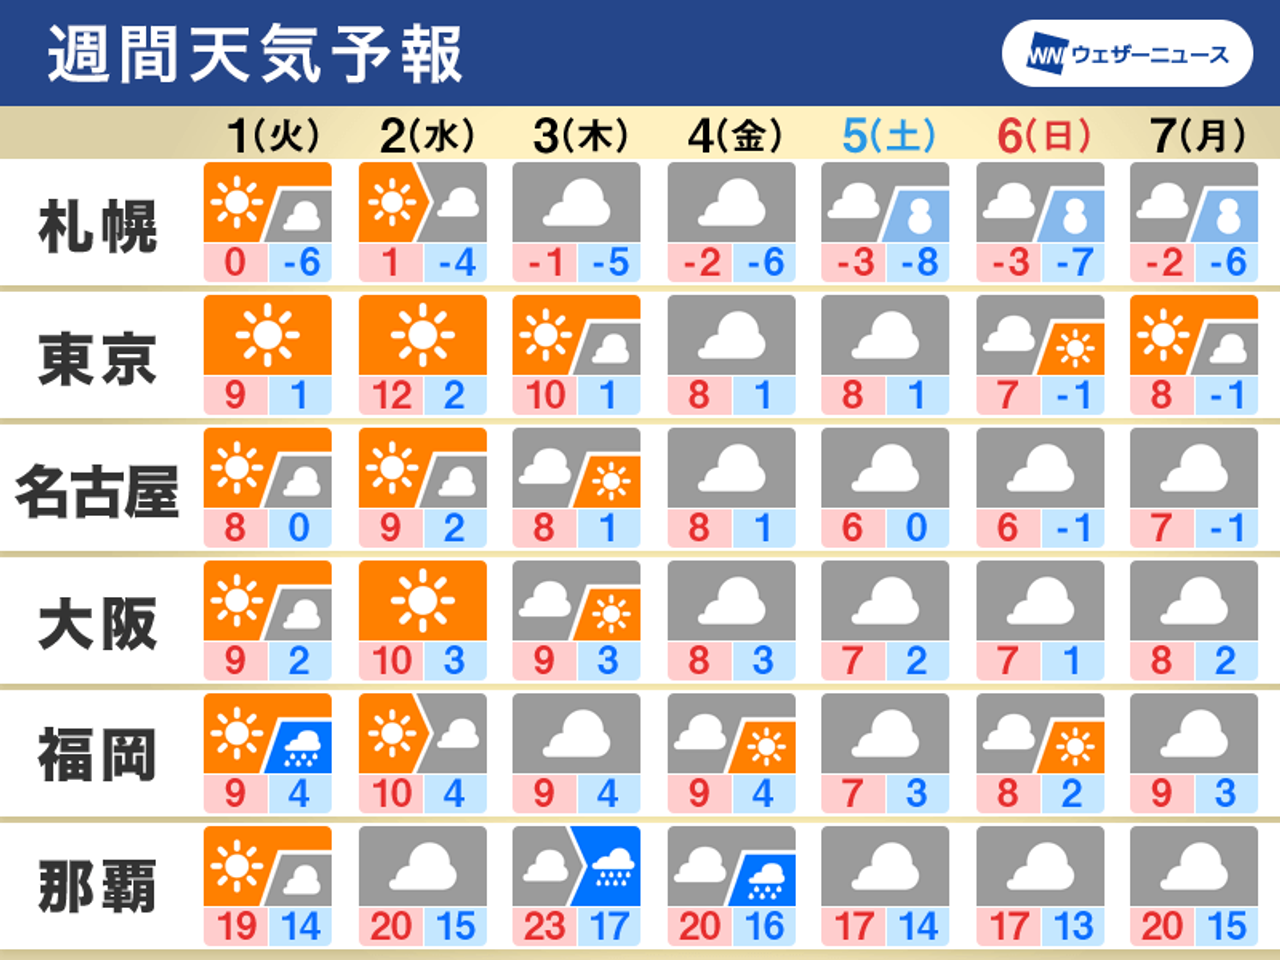 2022/01/31 05:46公開の週間天気